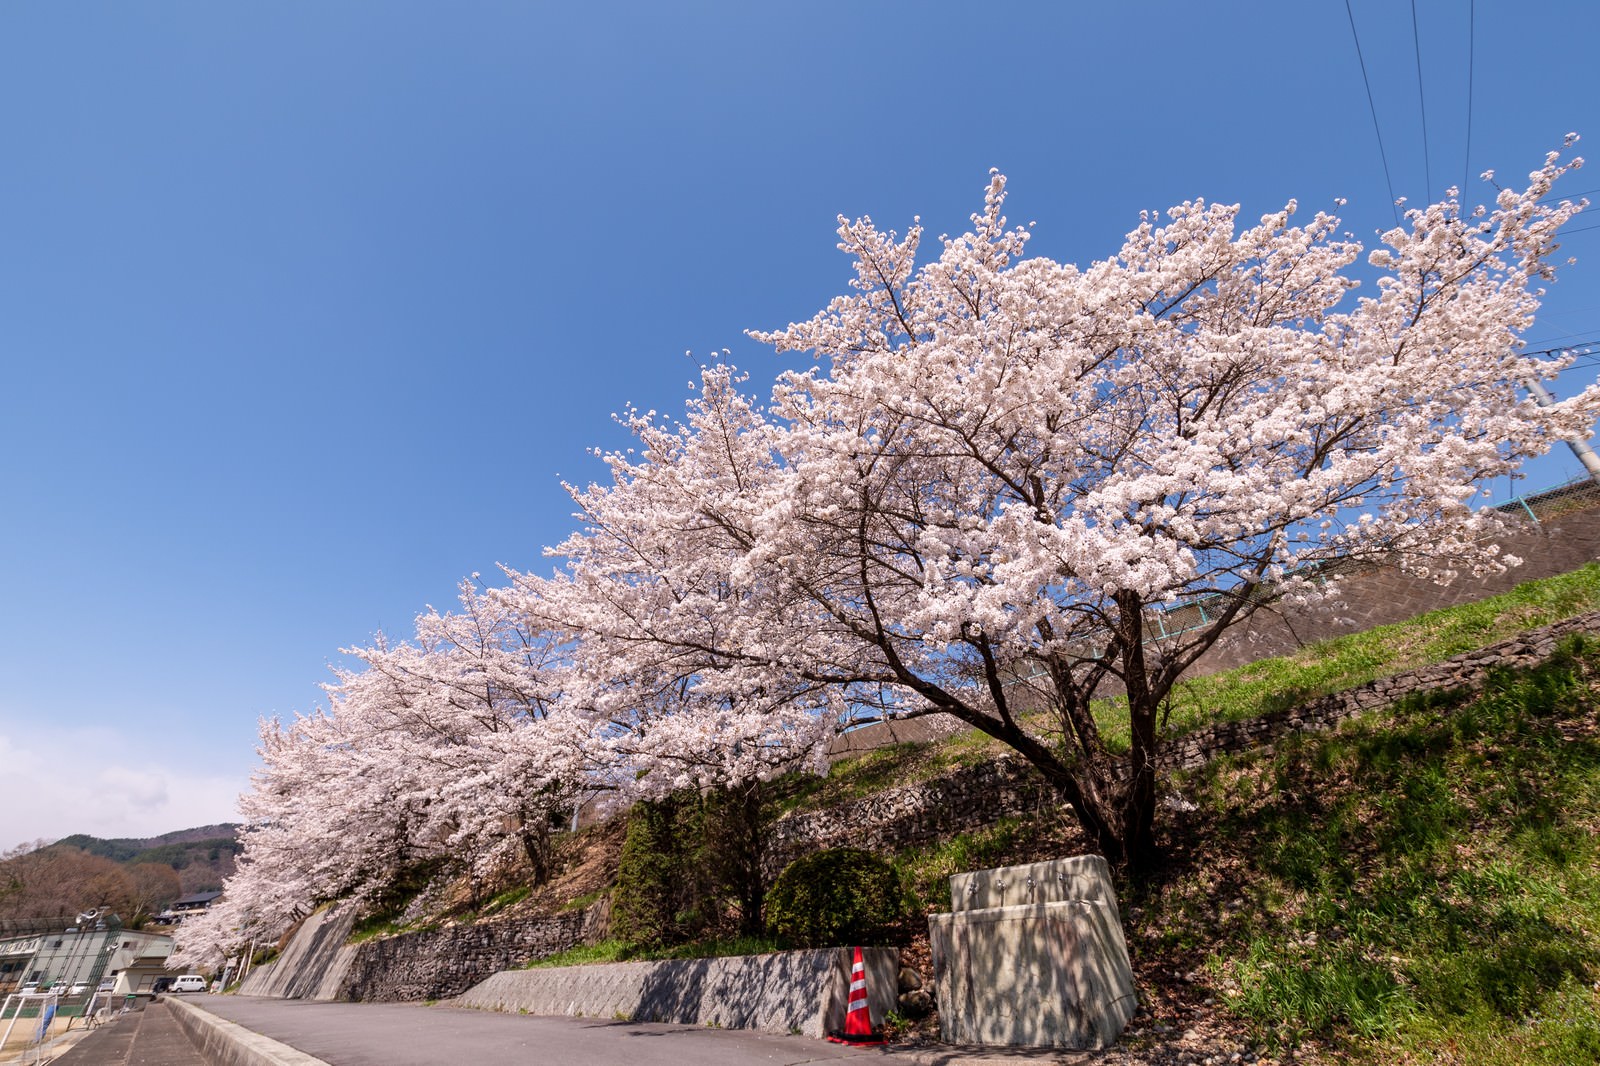 「武石グラウンドの道路沿いに咲く桜 | フリー素材のぱくたそ」の写真